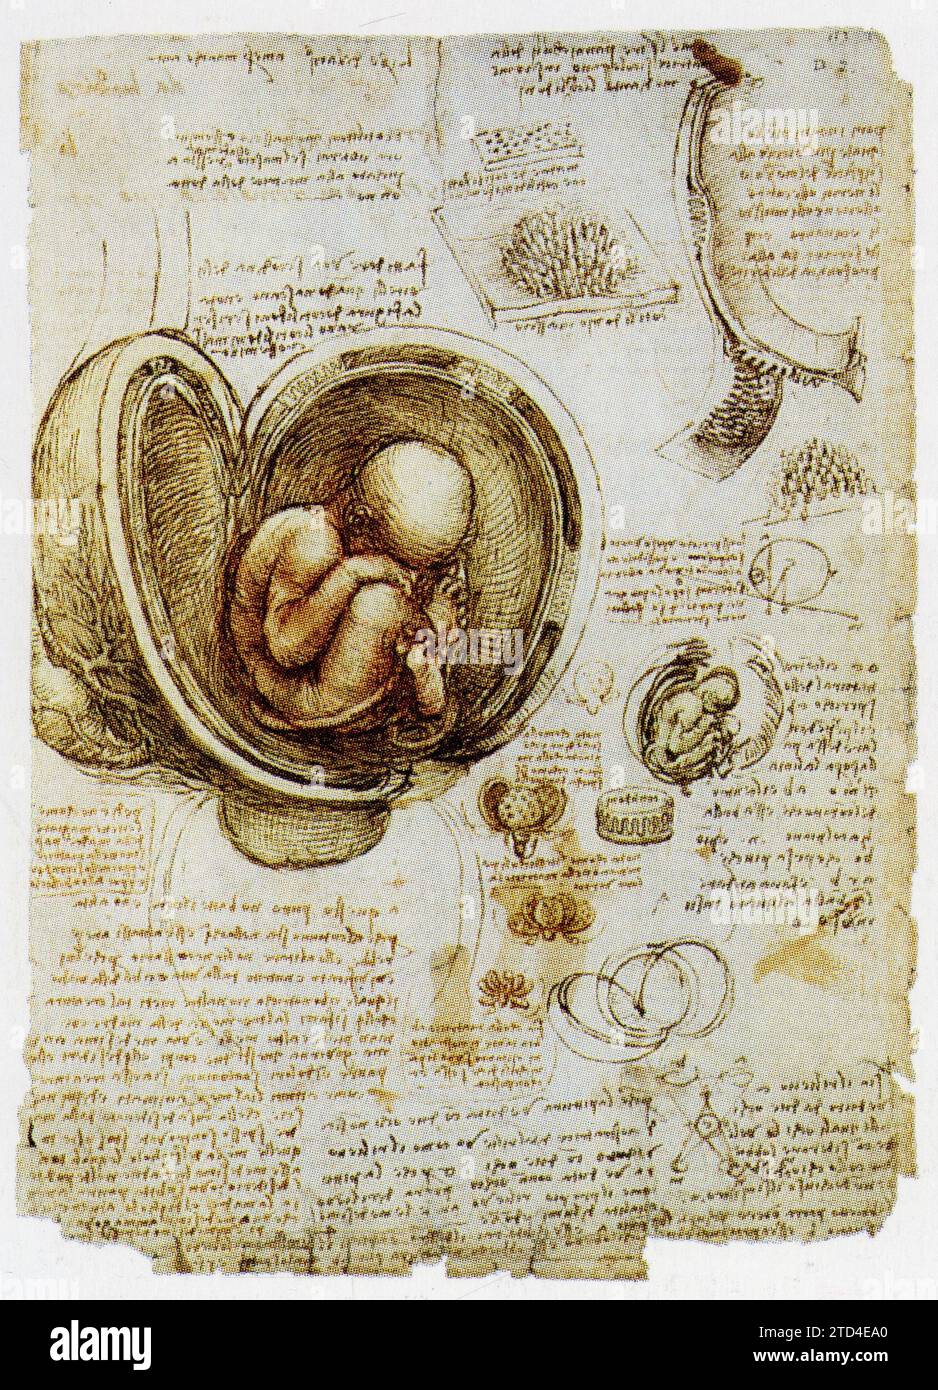 Leonardo da Vinci. Embrione nell'utero della madre. 1510 Foto Stock